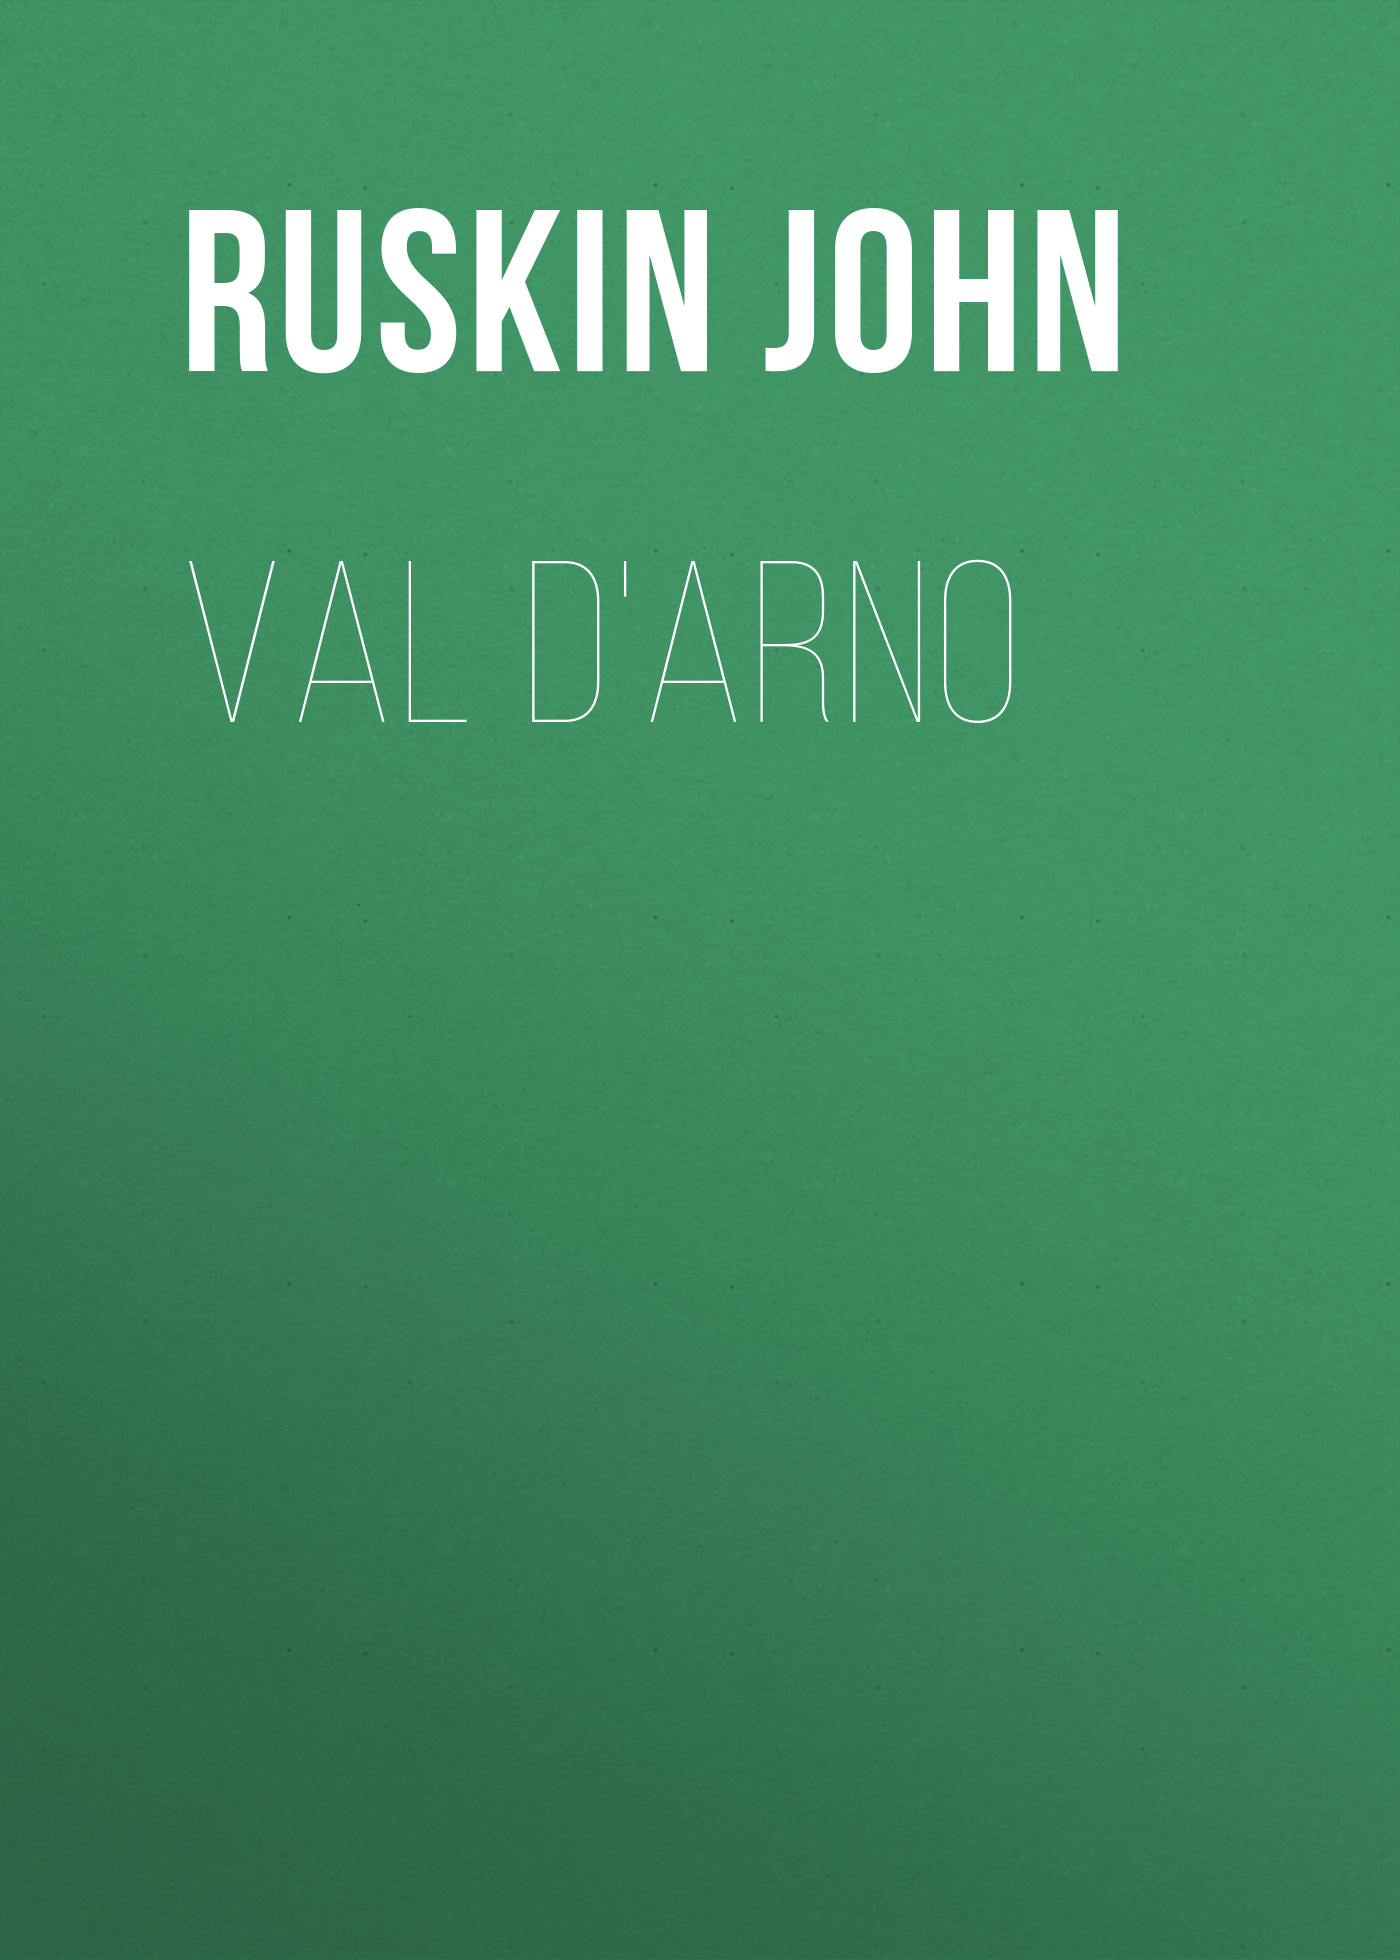 Книга Val d'Arno из серии , созданная John Ruskin, может относится к жанру Зарубежная старинная литература, Зарубежная прикладная и научно-популярная литература, Литература 19 века, Изобразительное искусство, фотография. Стоимость электронной книги Val d'Arno с идентификатором 34841766 составляет 0 руб.